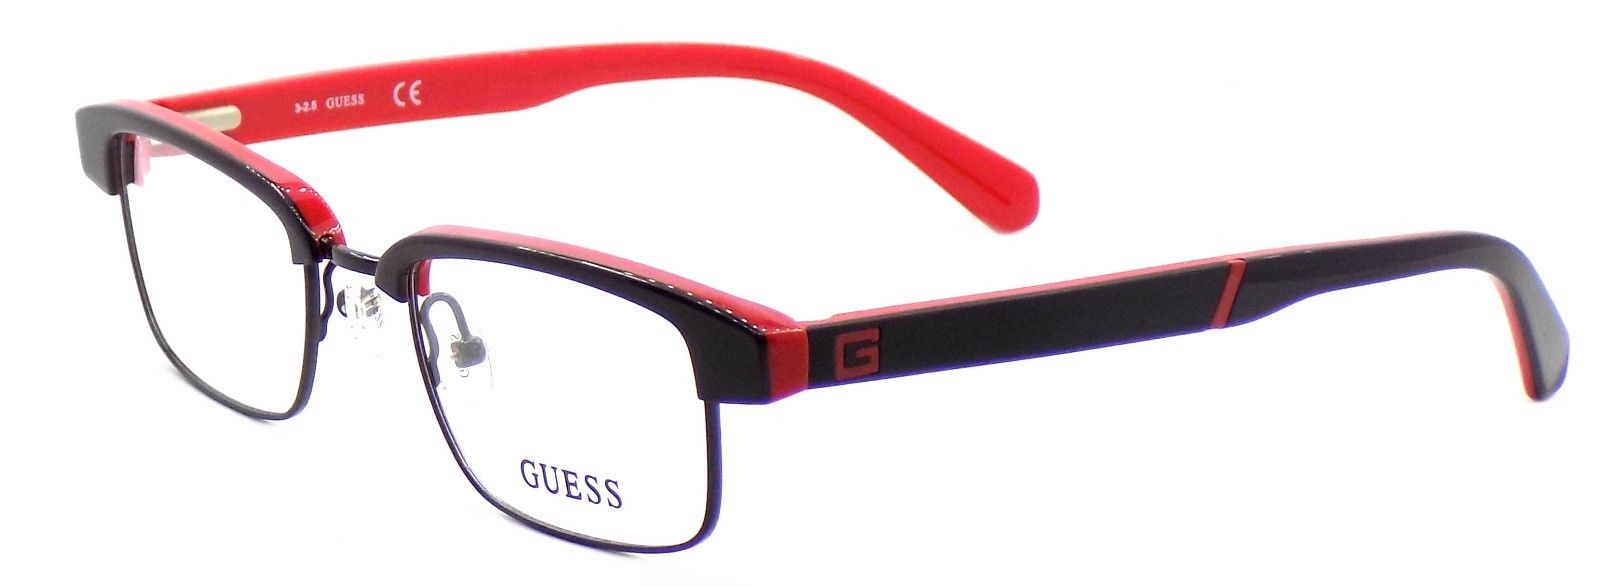 1-GUESS GU1905 005 Men's Eyeglasses Frames 48-20-140 Black / Red + Case-664689774241-IKSpecs